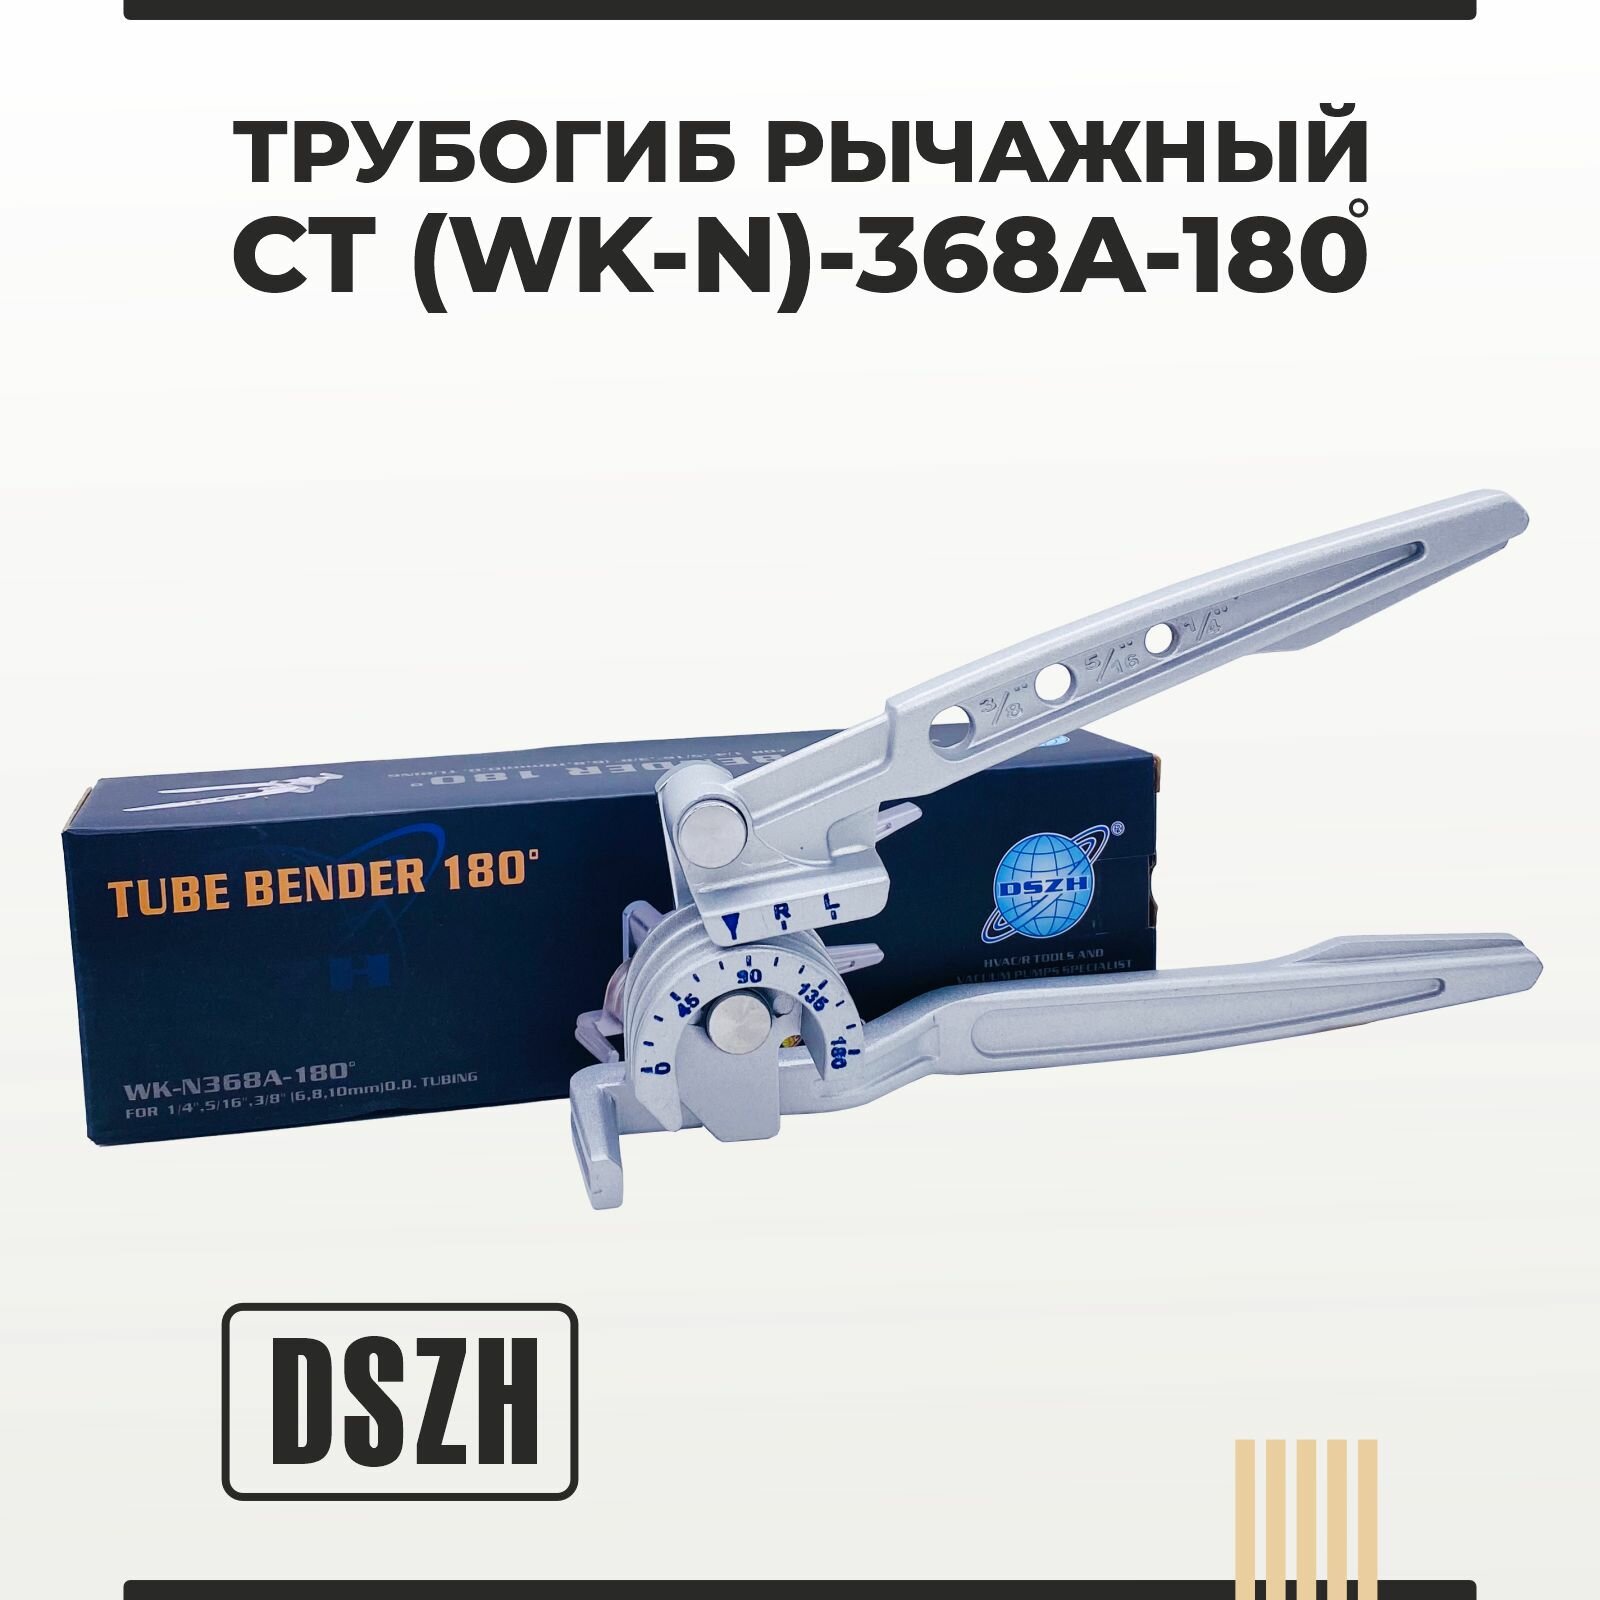 Трубогиб рычажный DSZH CT (WK-N) - 368 - 180 на три размера трубки 1/4 5/16 3/8 изгиб 180 градусов